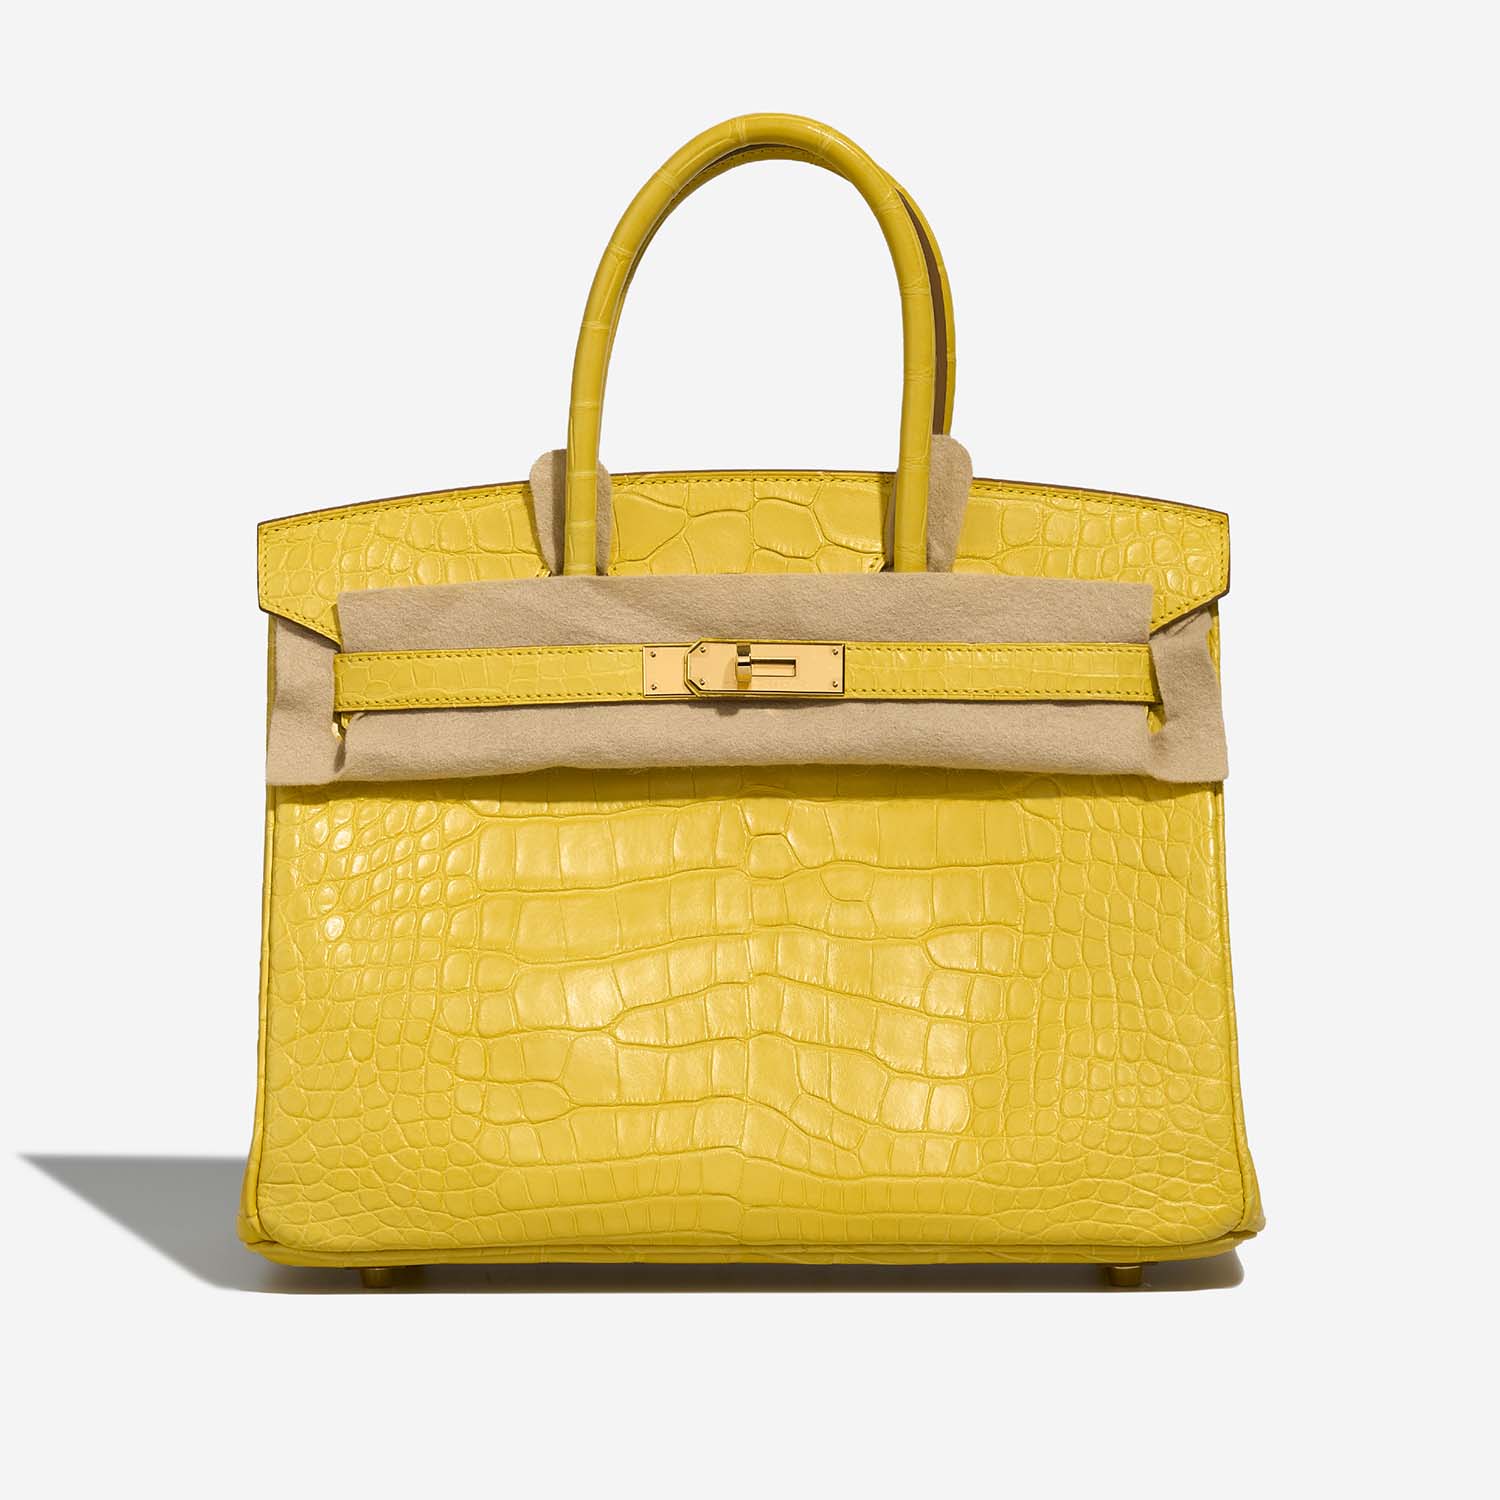 Hermès Birkin 30 Mimosa Front Velt | Verkaufen Sie Ihre Designer-Tasche auf Saclab.com